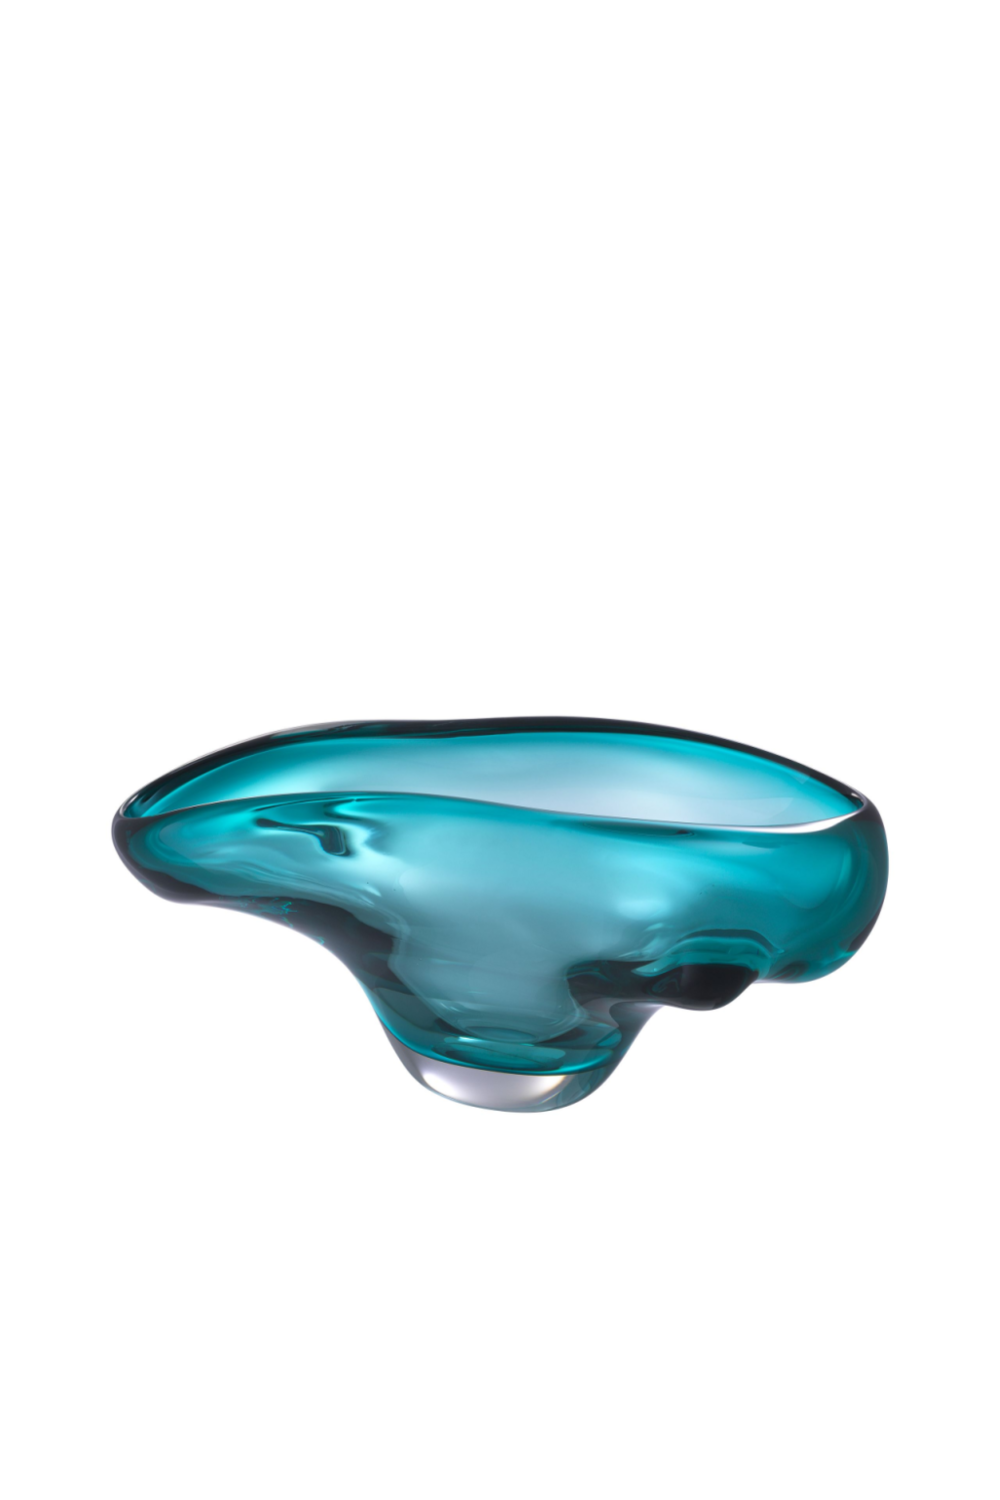 Turquoise Handblown Glass Bowl | Eichholtz Darius | OROA